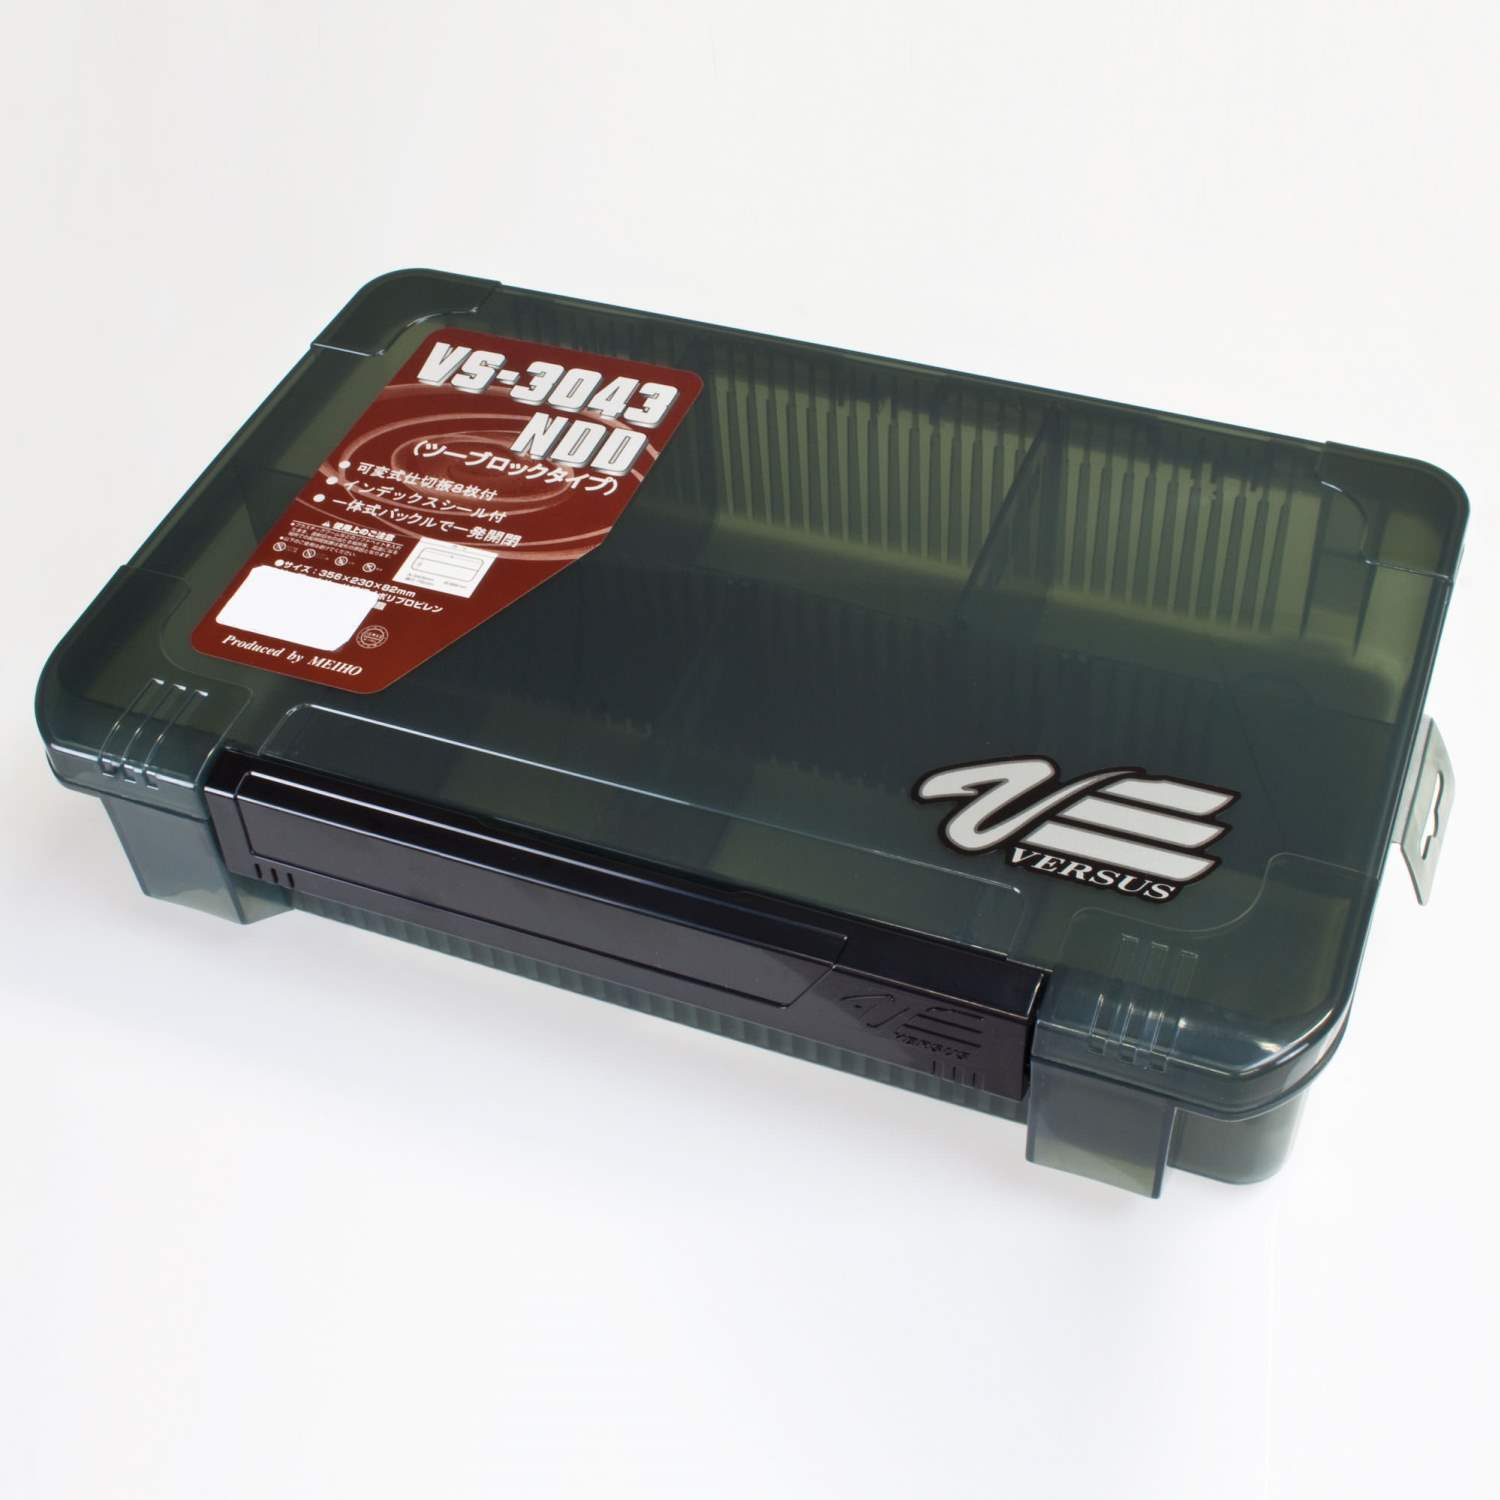 Meiho/ Versus VS 3043 ND-2 Box schwarz